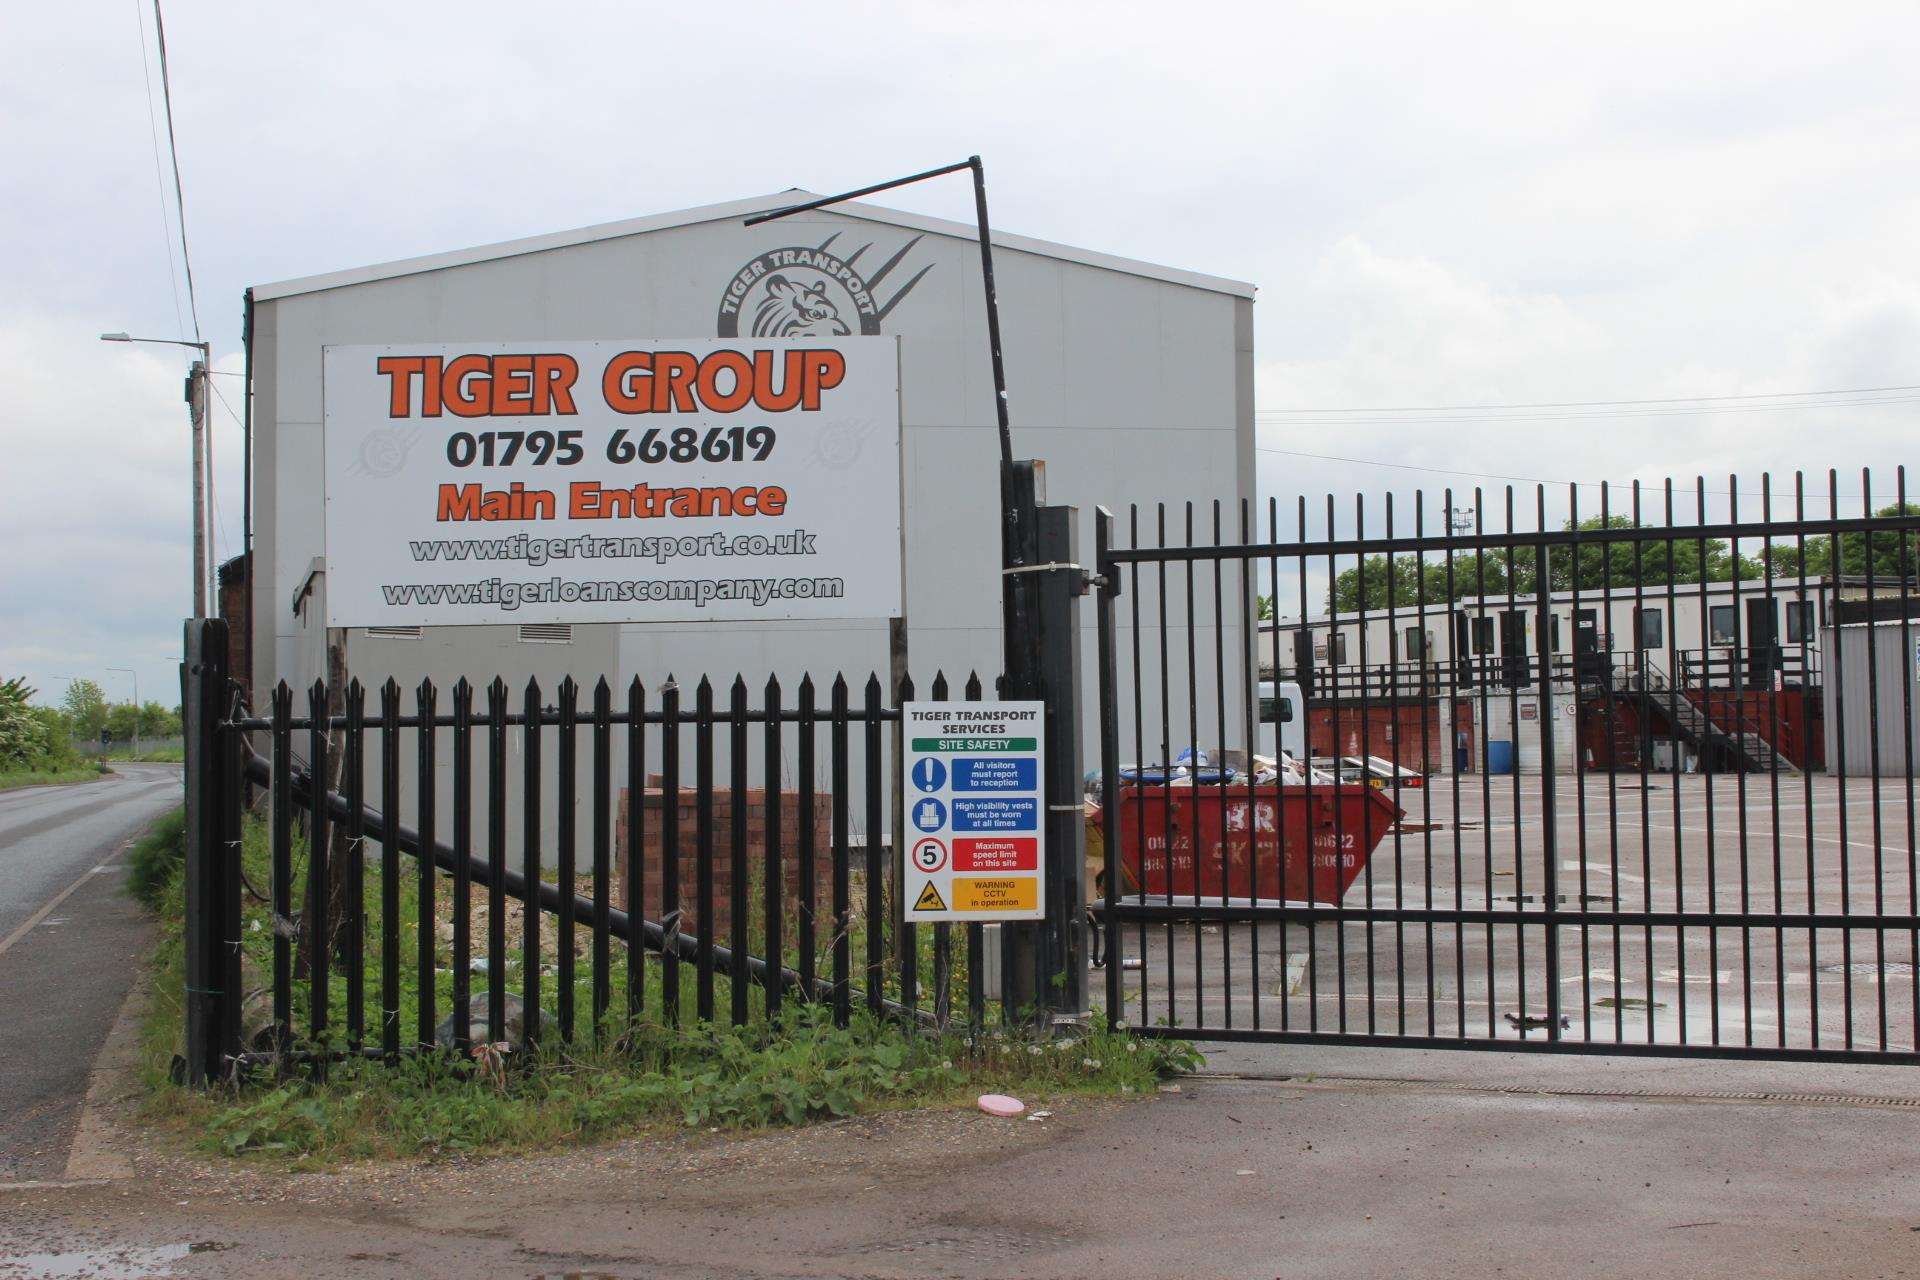 Shut gates at Tiger Group's West Minster depot